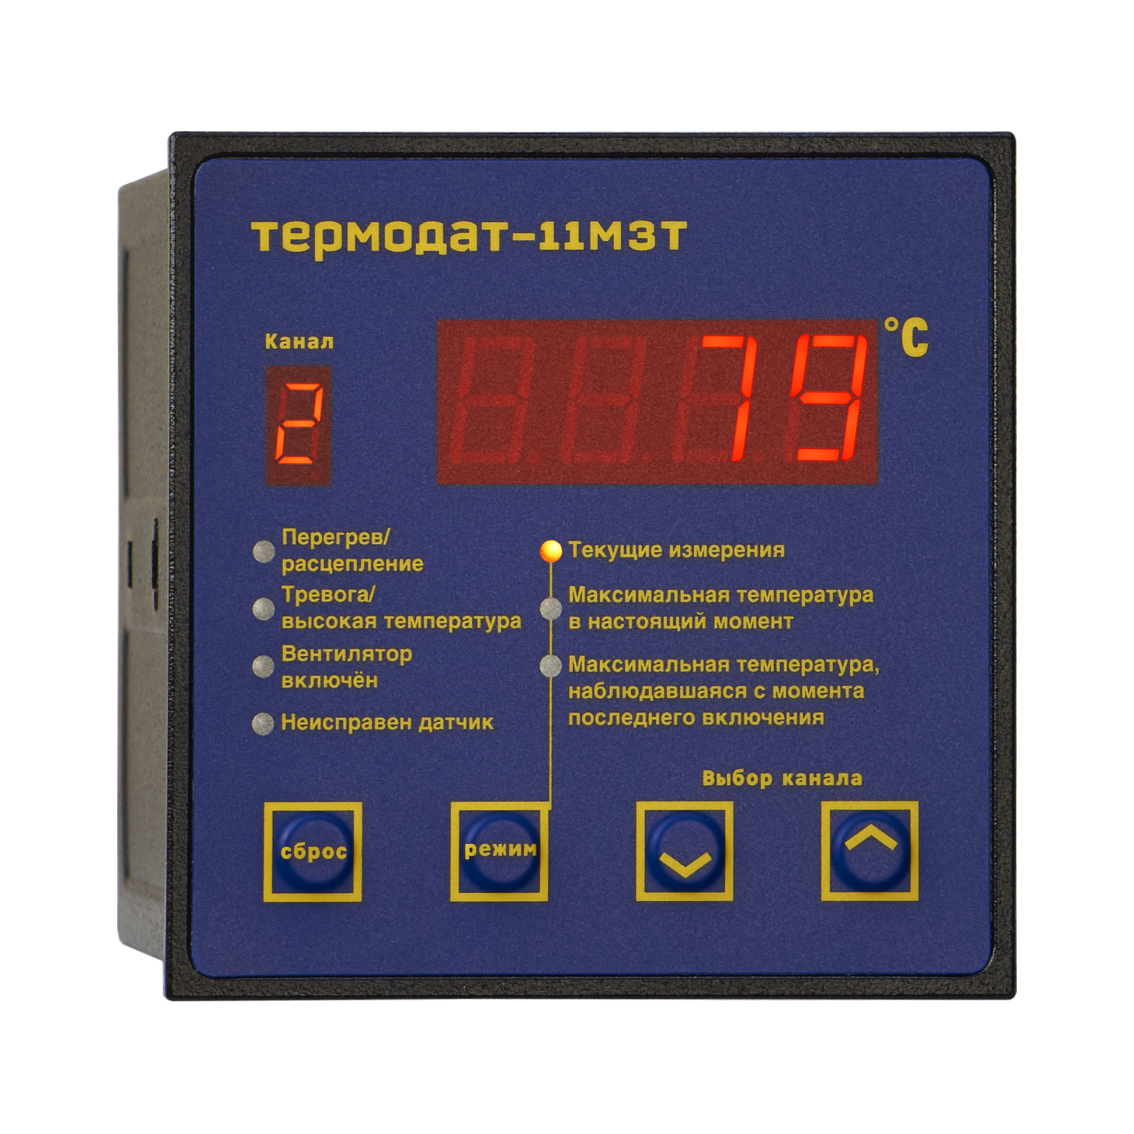 Термодат-11М3Т1